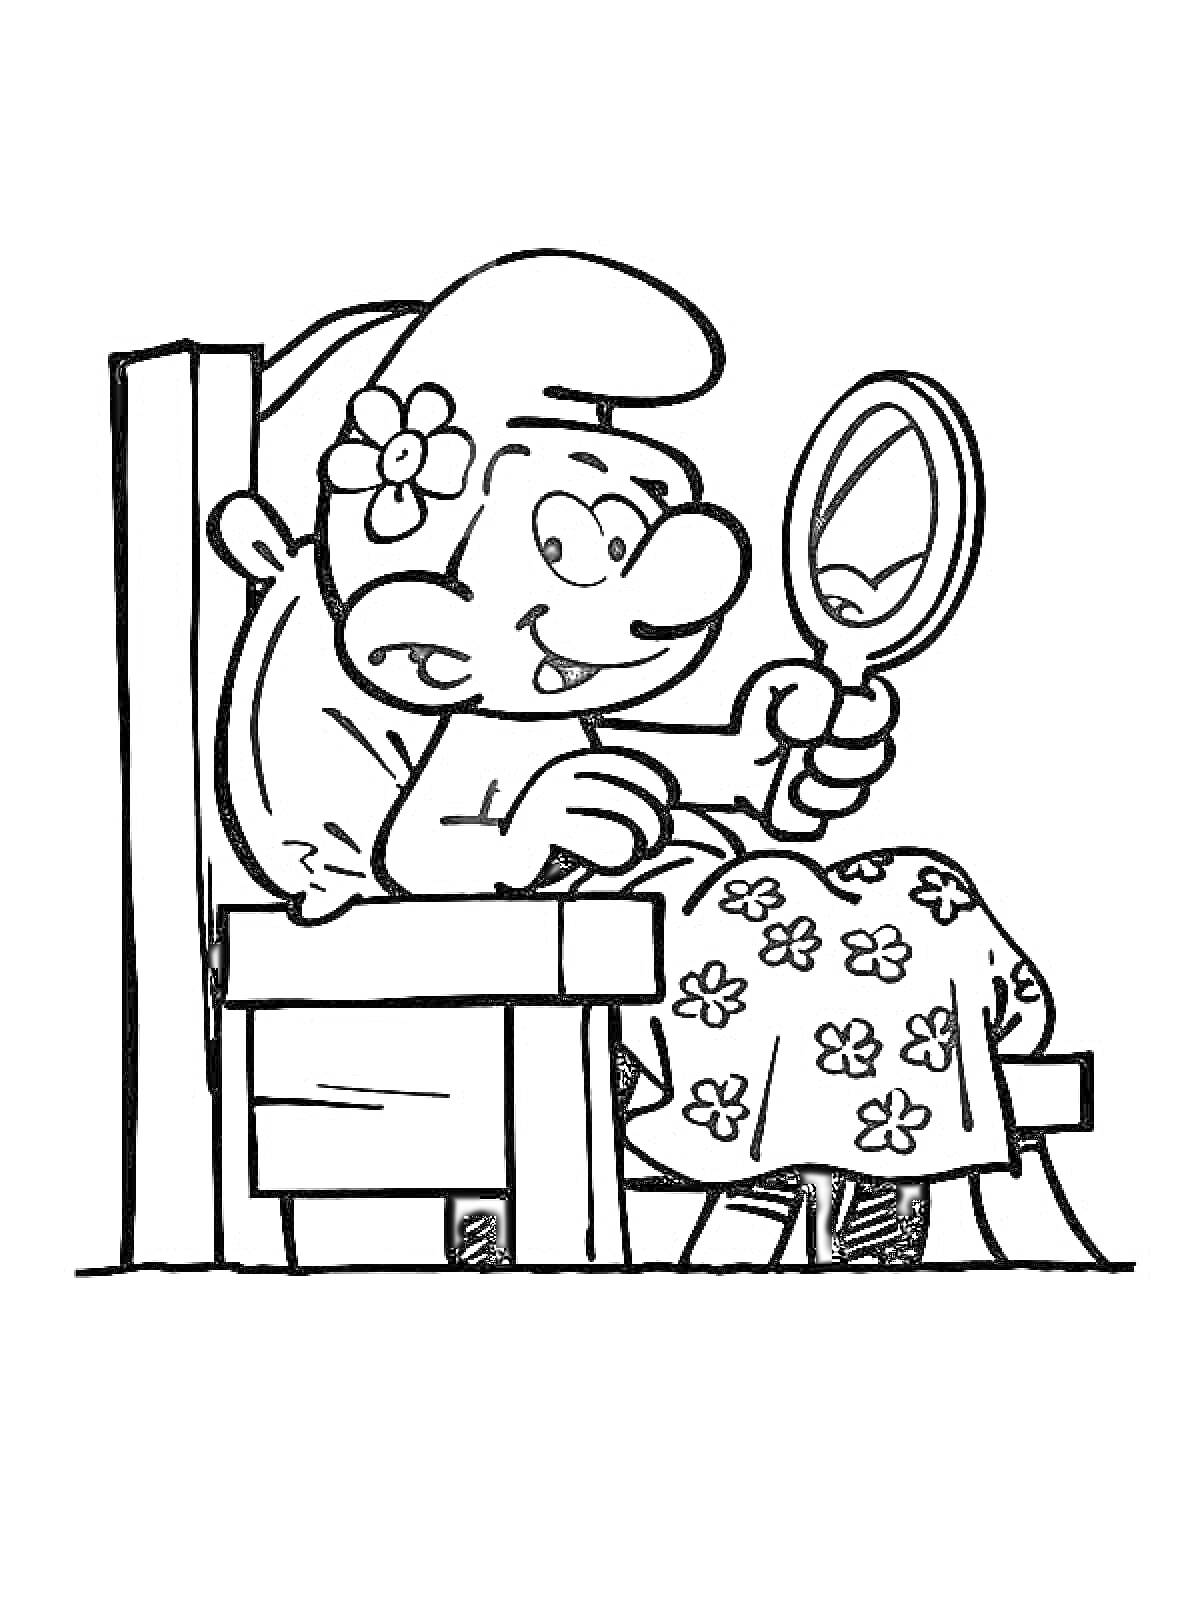 Смурфик с цветком за ухом, сидящий на стуле и смотрящий в зеркало